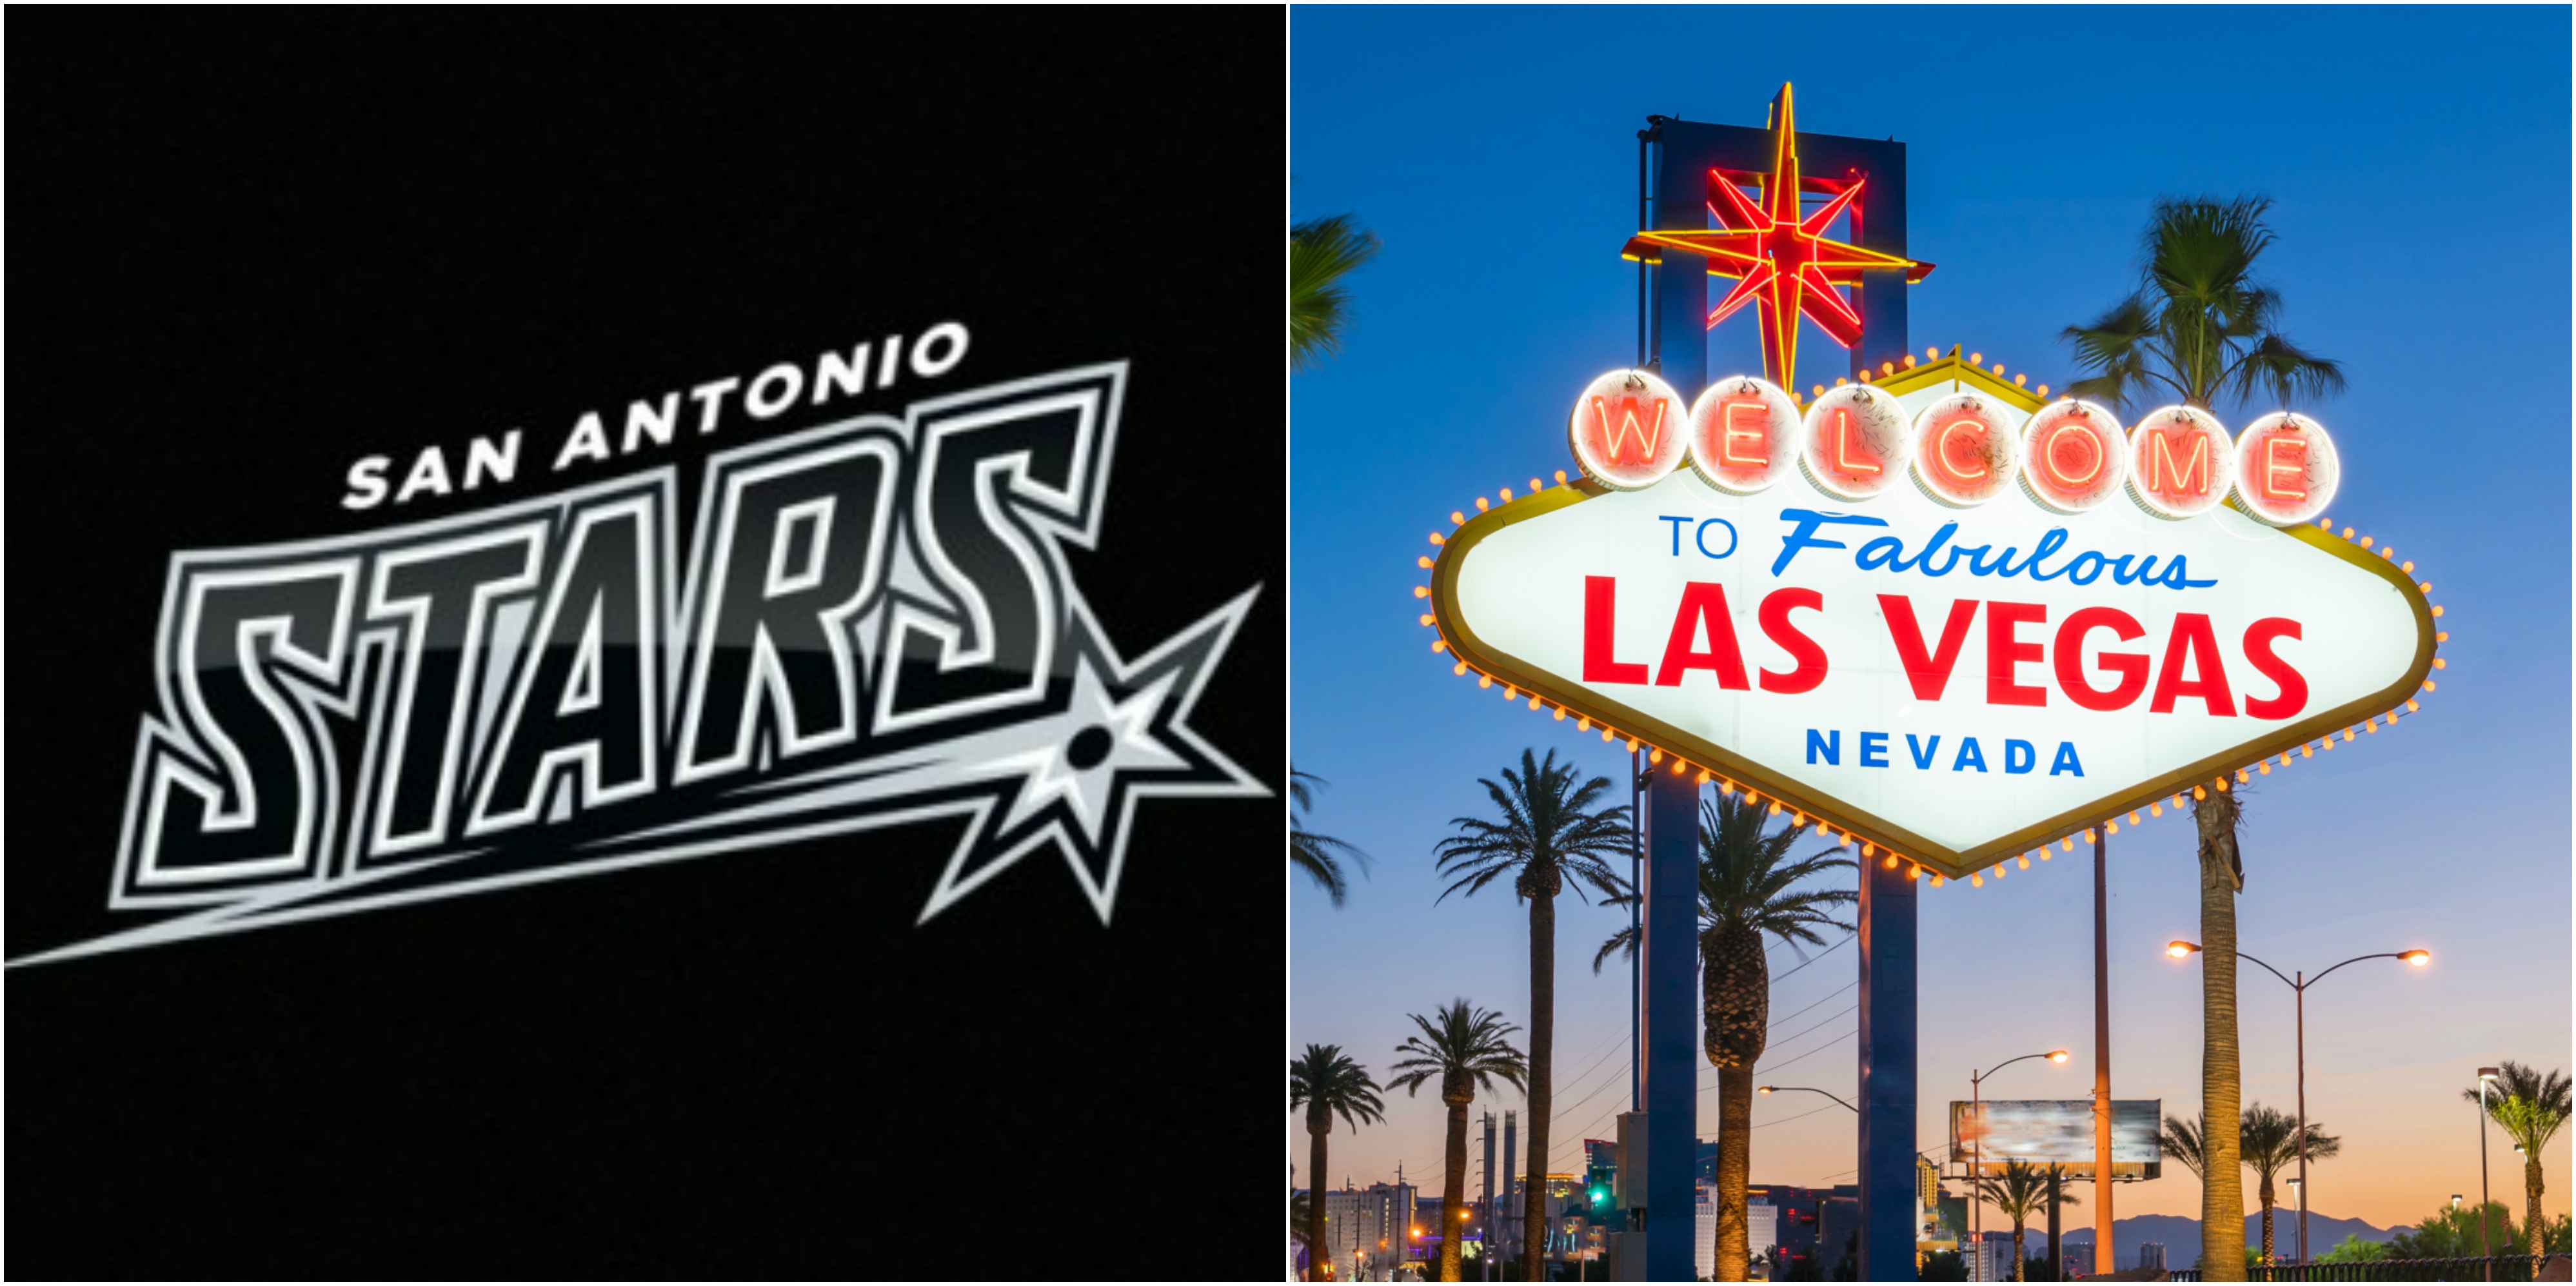 San Antonio Stars announce move to Las Vegas